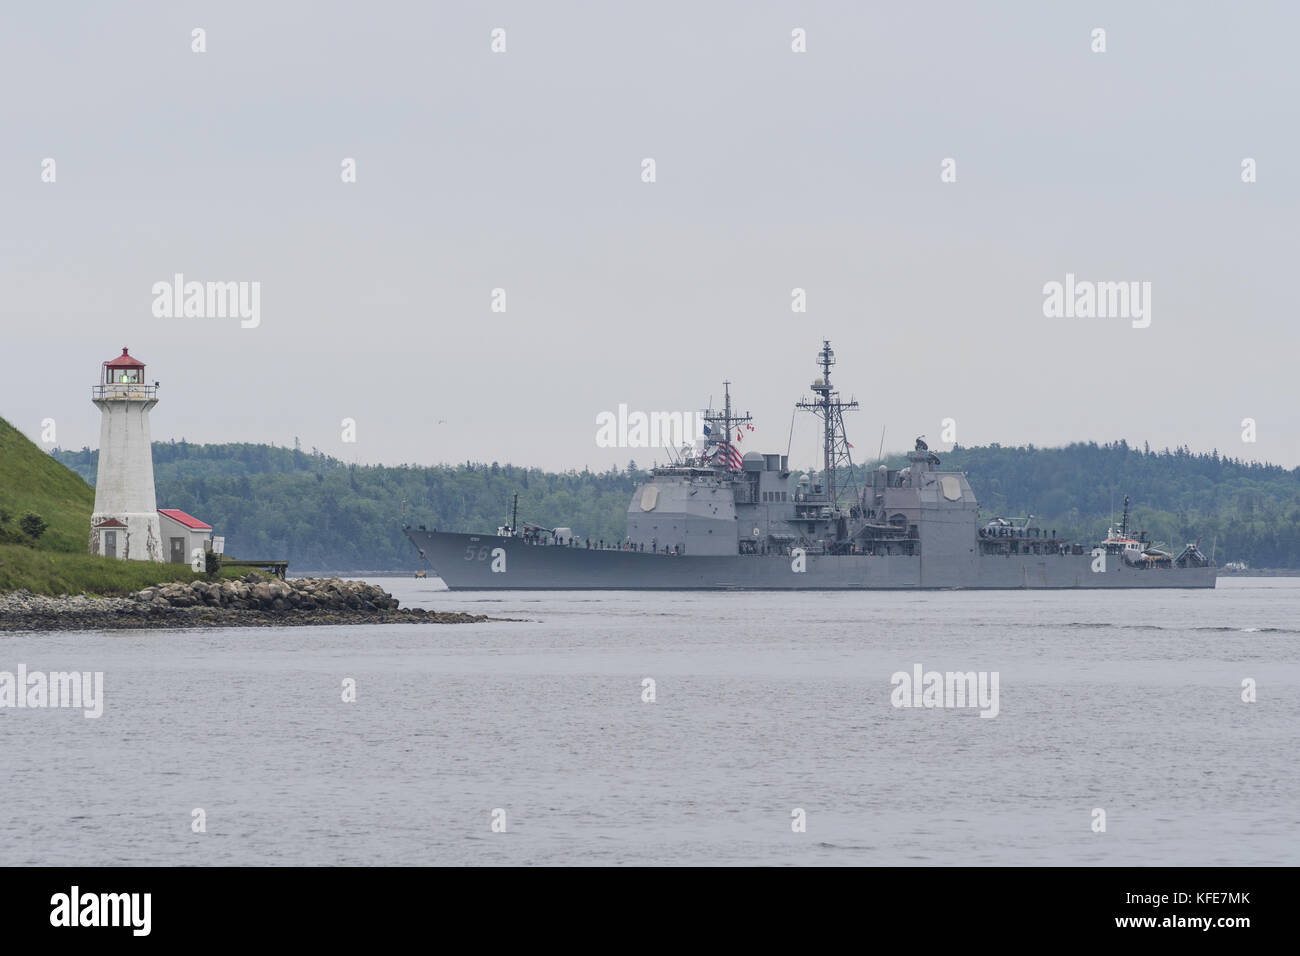 USS SAN JACINTO, incrociatore missilistico guidato della US Navy Aegis, entrando nel porto di Halifax, Nuova Scozia, Canada. Foto Stock